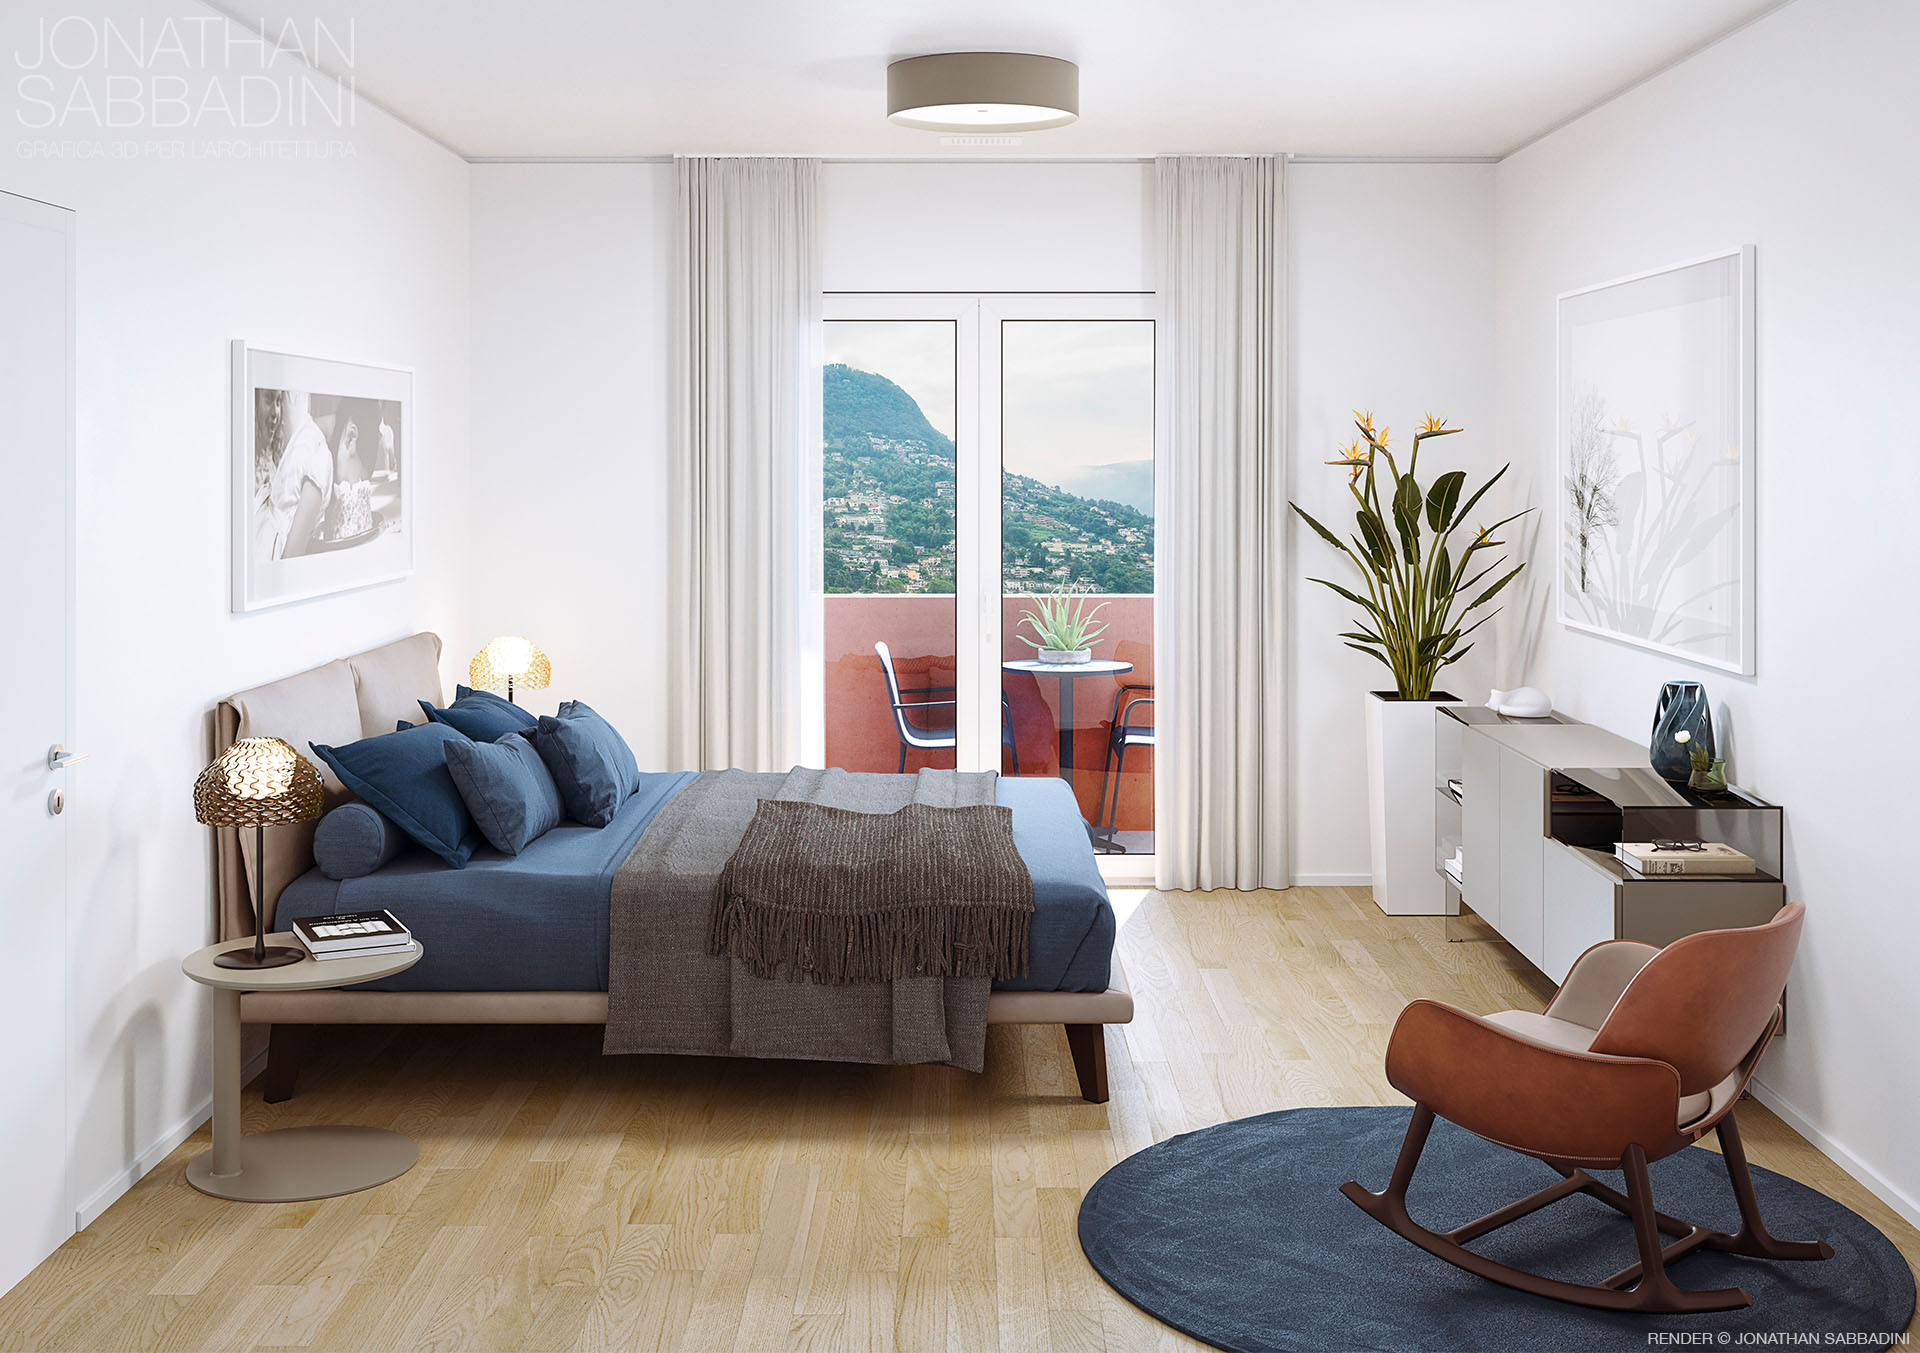 camera letto appartamenti Parco Brentani Lugano render Jonathan Sabbadini